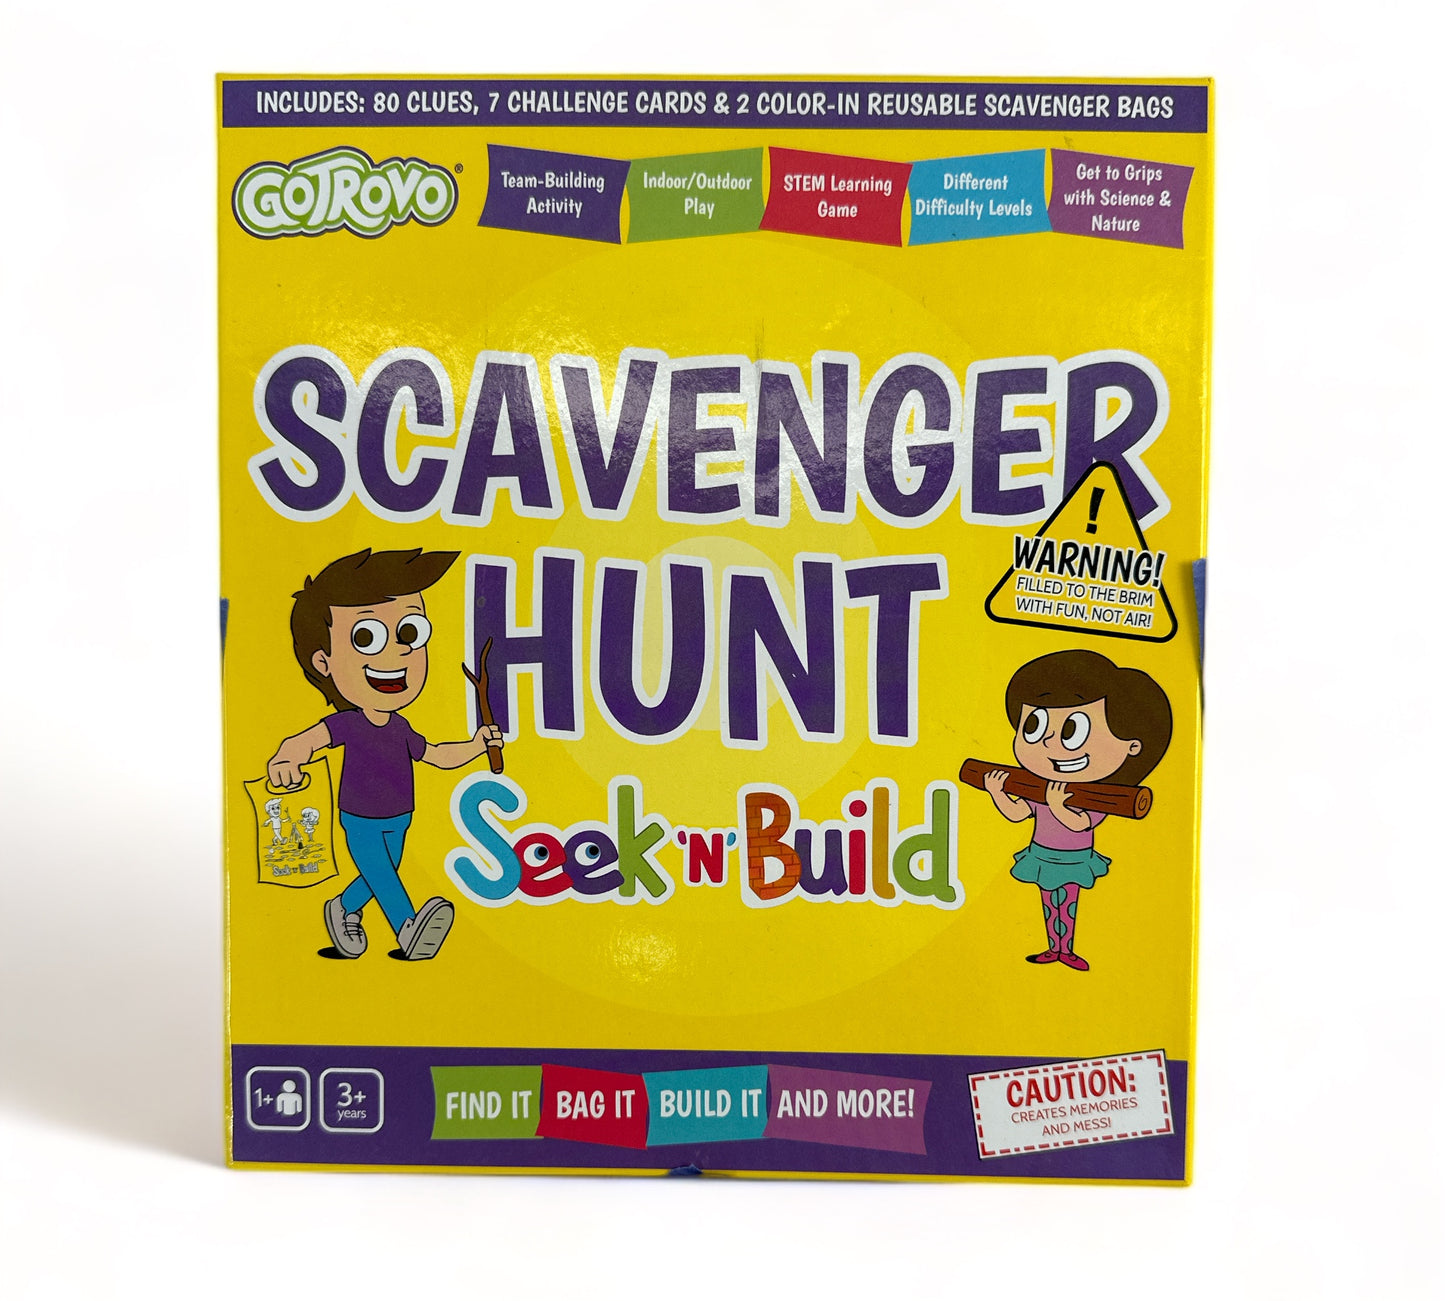 Scavenger Hunt Seek 'n' Build